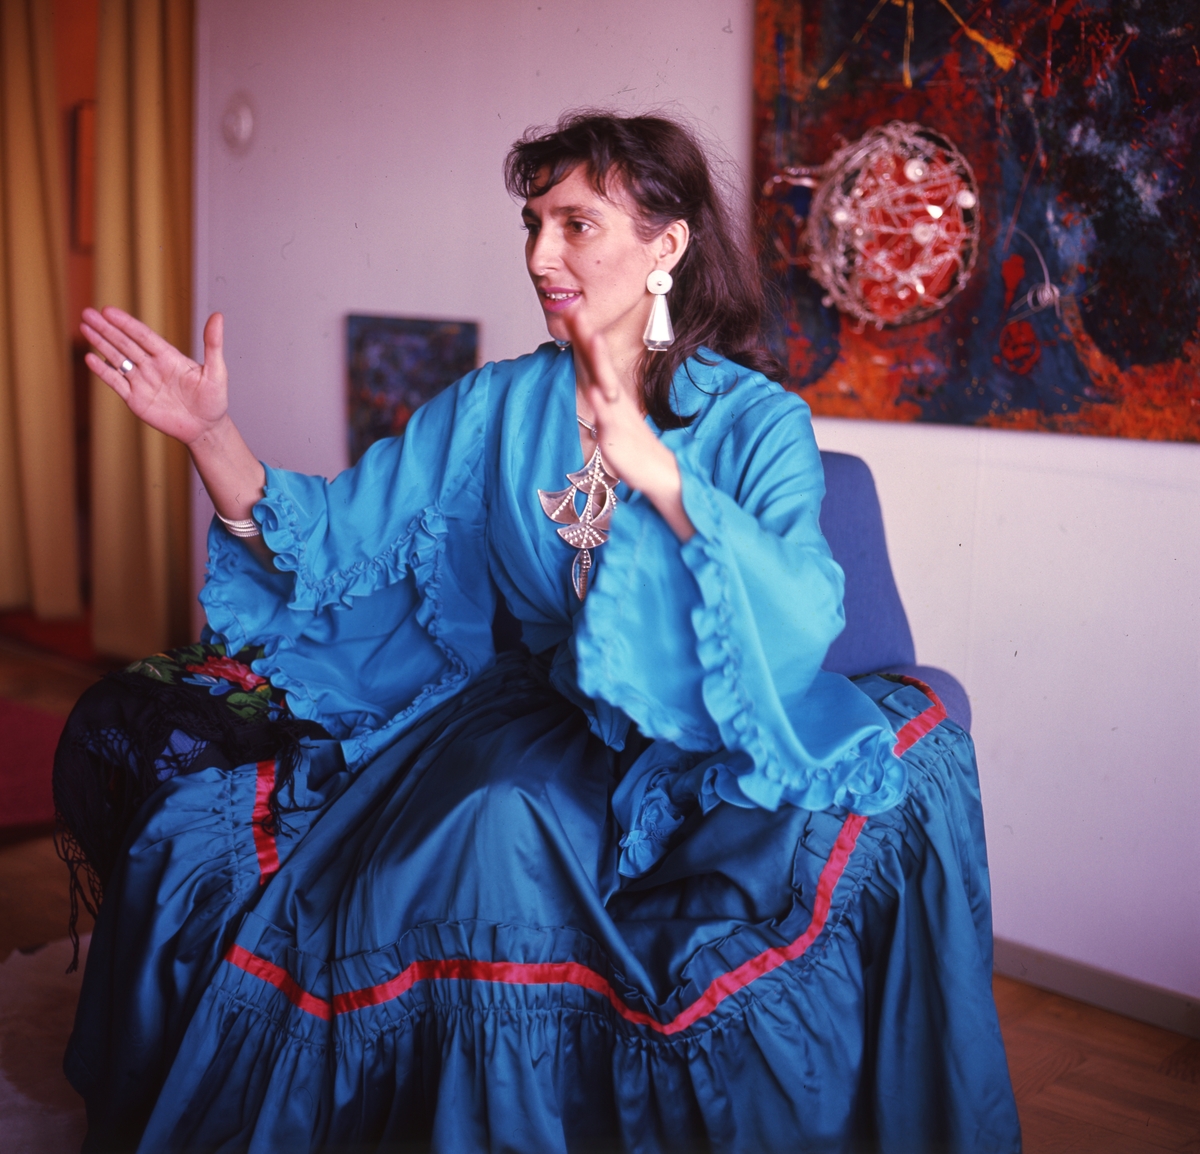 Författaren Katarina Taikon avporträtterad i traditionella kläder.